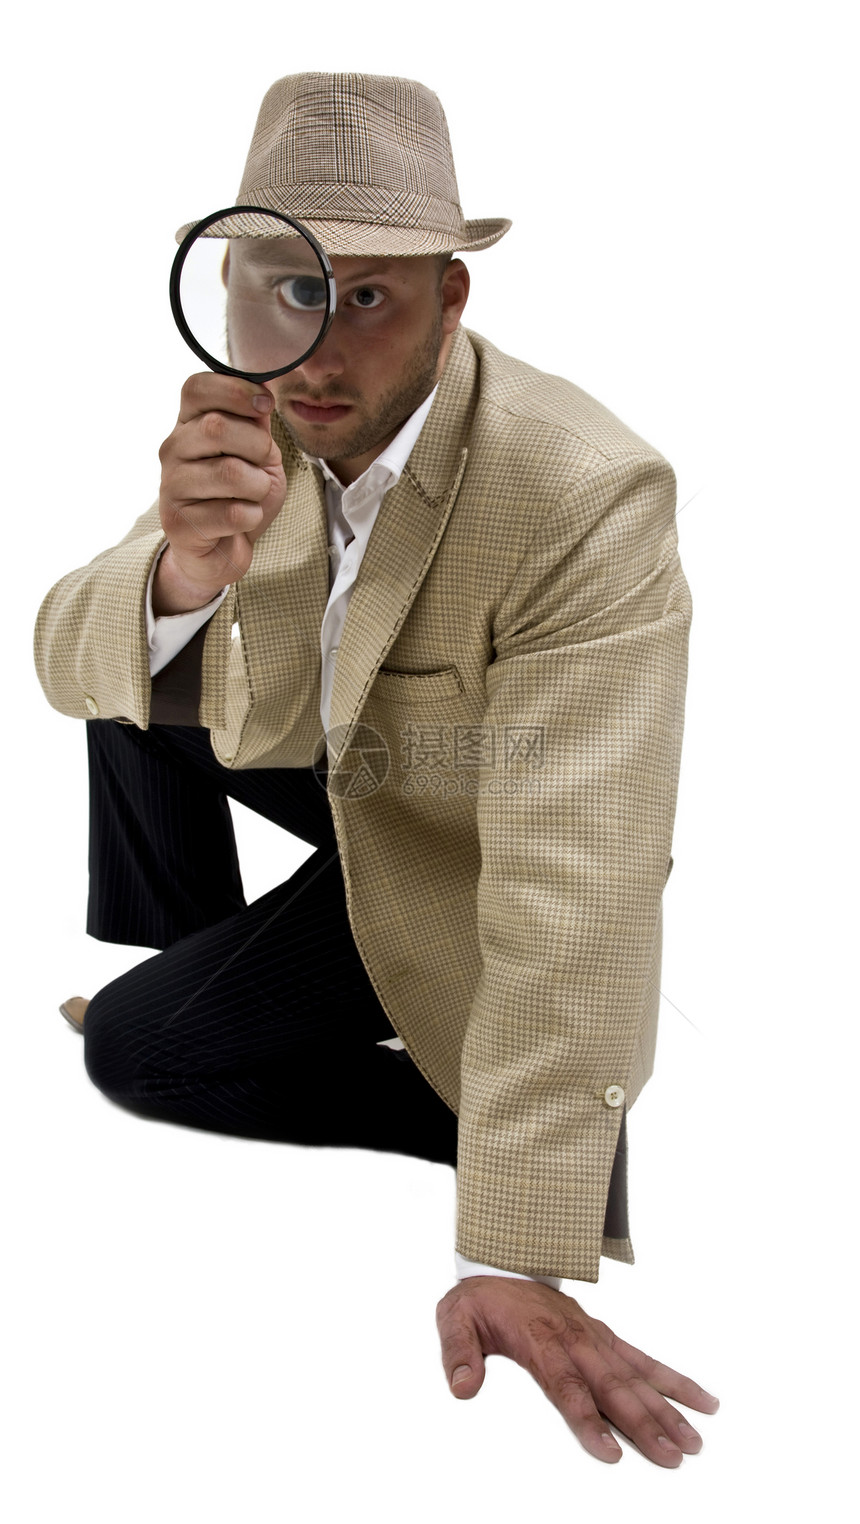 男人把放大镜放在眼睛的附近男性白色玻璃镜片套装工具衬衫帽子调查照片图片